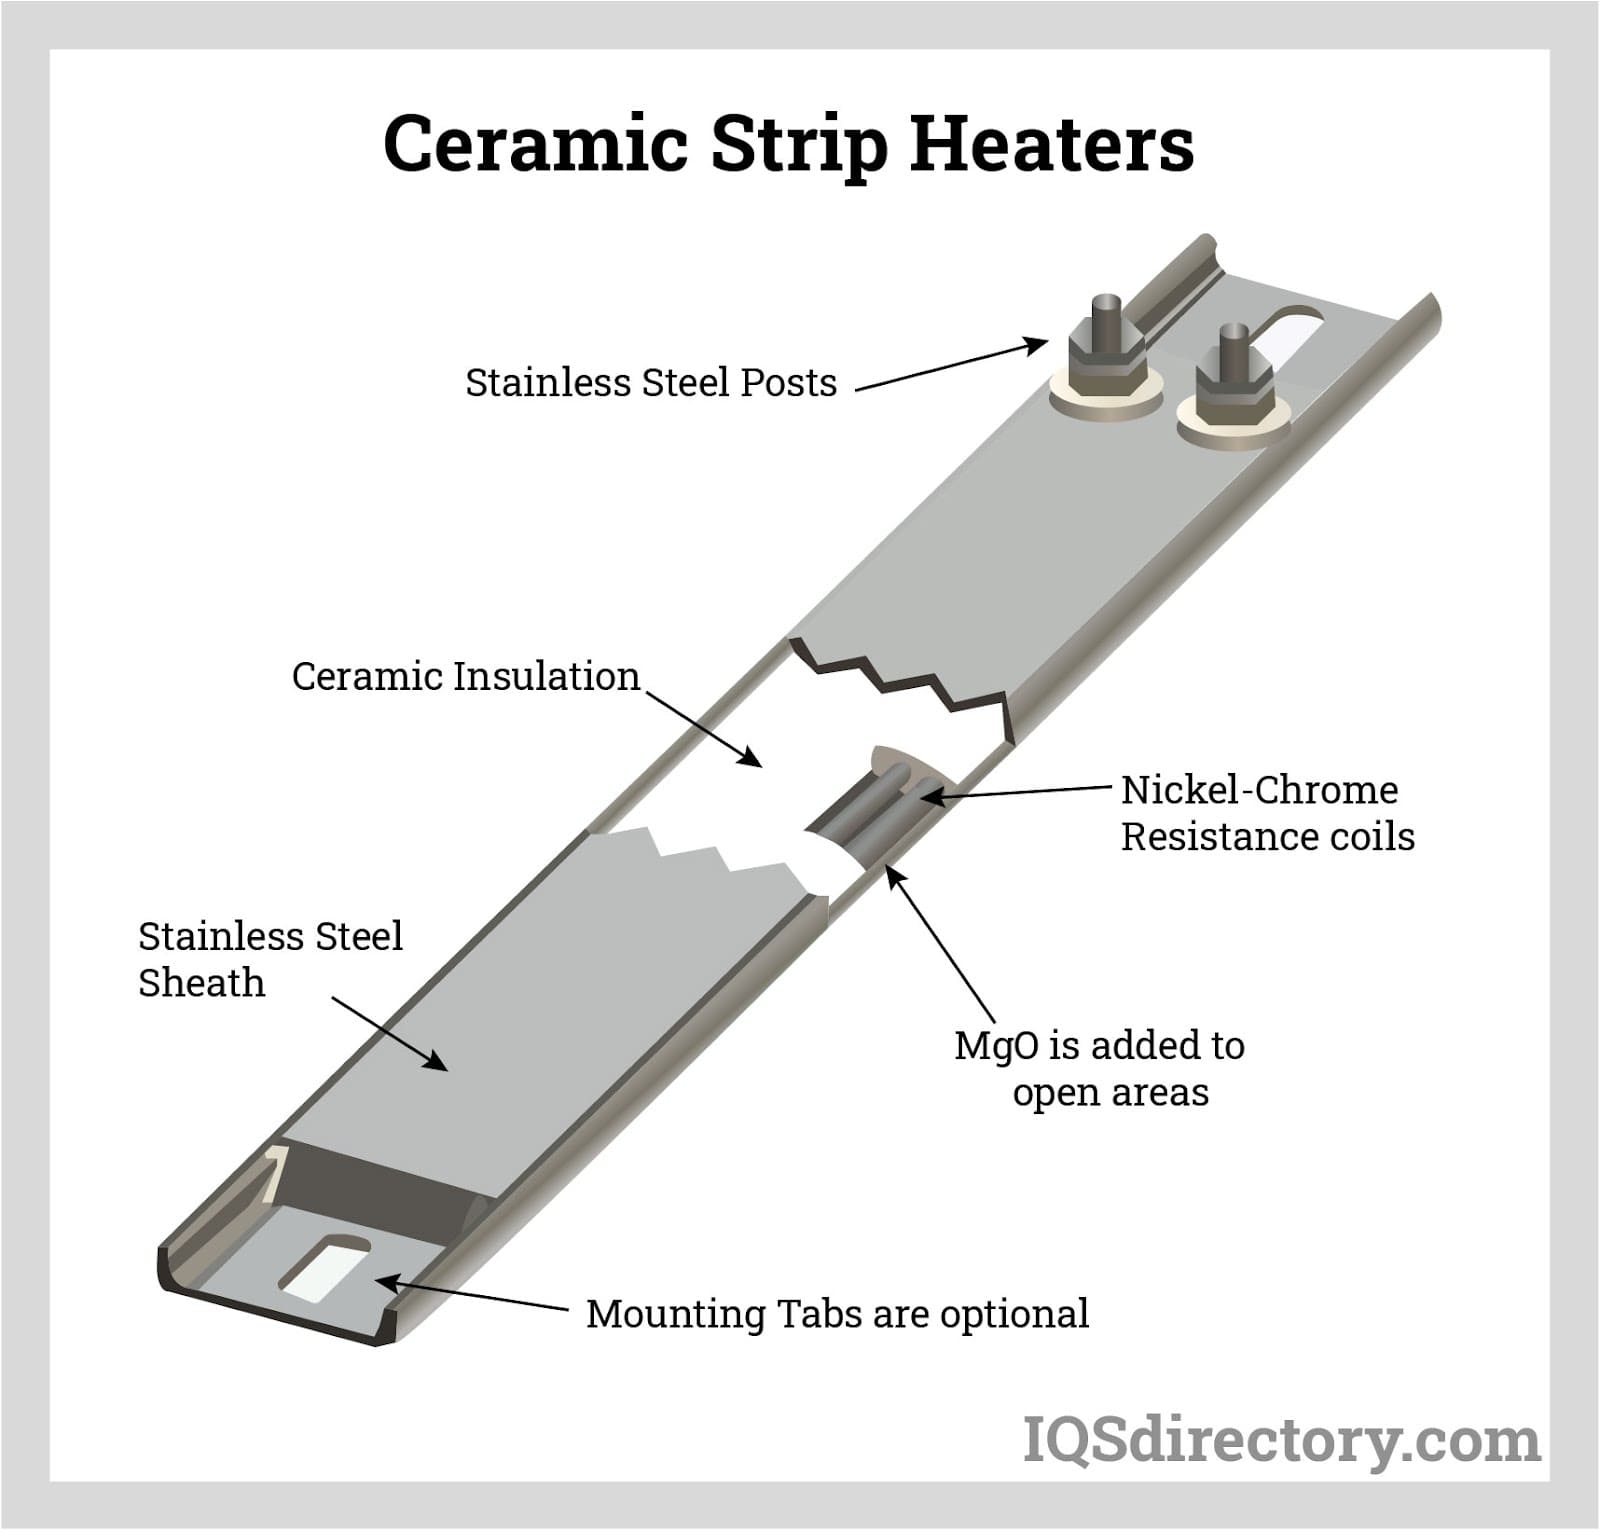 Ceramic Strip Heaters